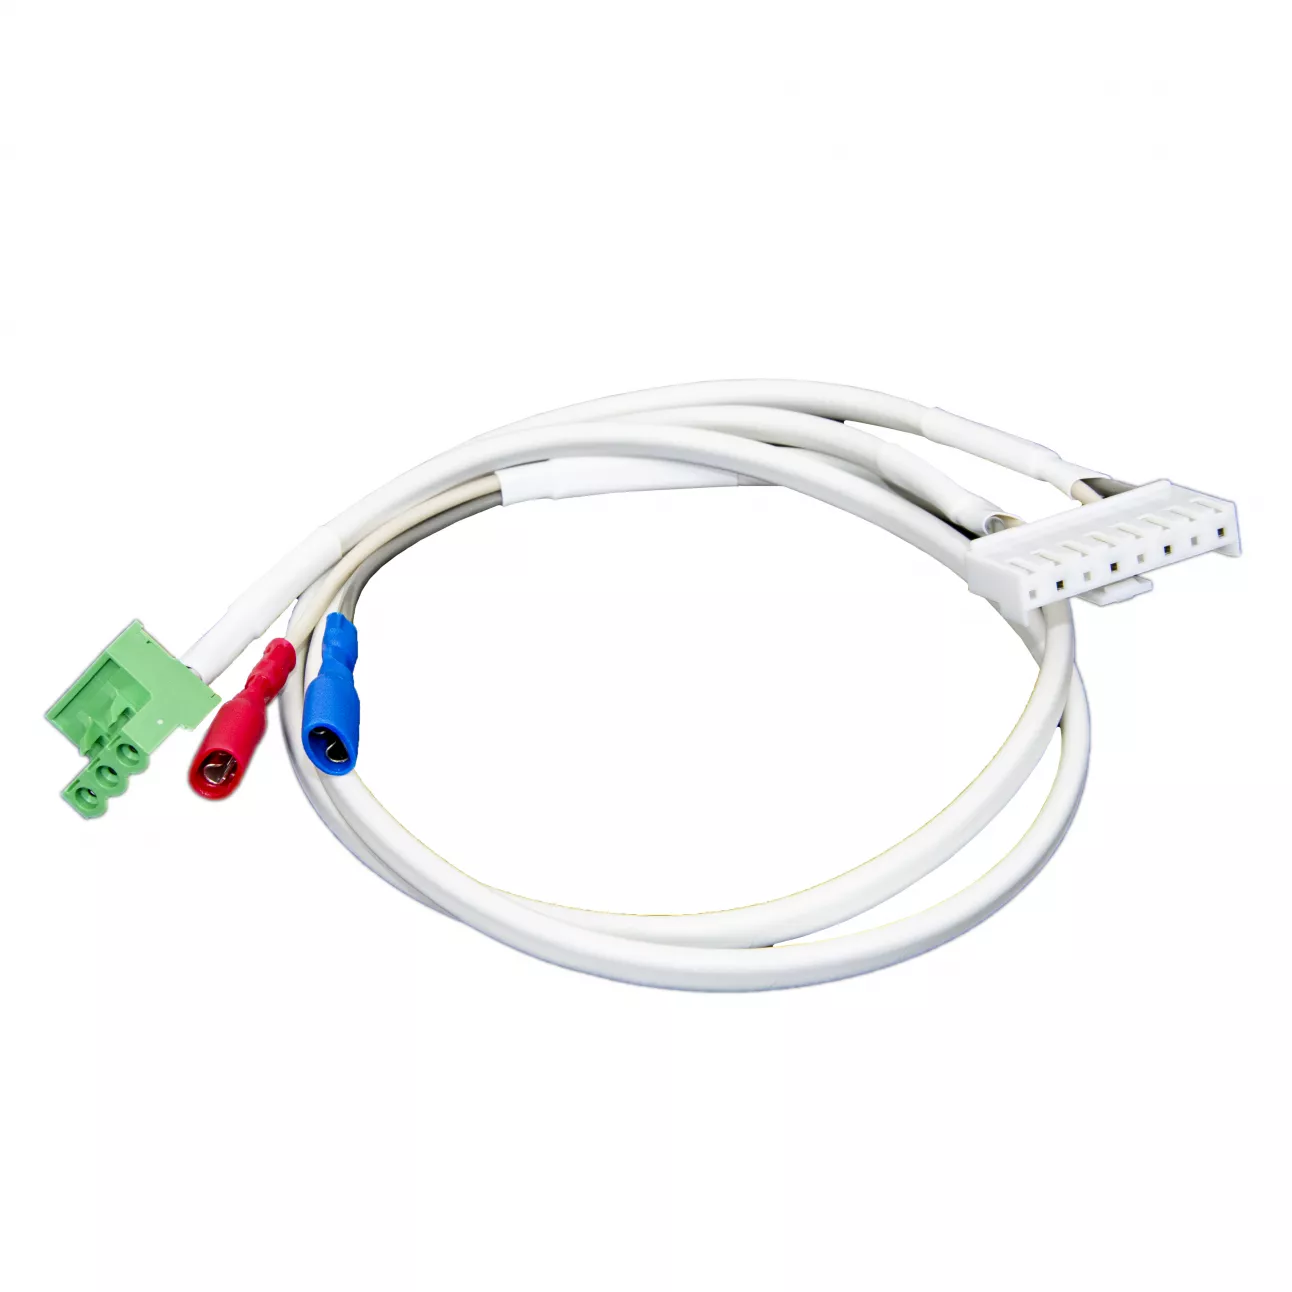 SNR-RPS pwr cable kit PSC-160 - Набор кабелей для RPS без сигнальных контактов: питание 220В, акб, 3PIN. Предназначены для подключения напряжения питания и нагрузки к источнику питания PSC-160A-C.